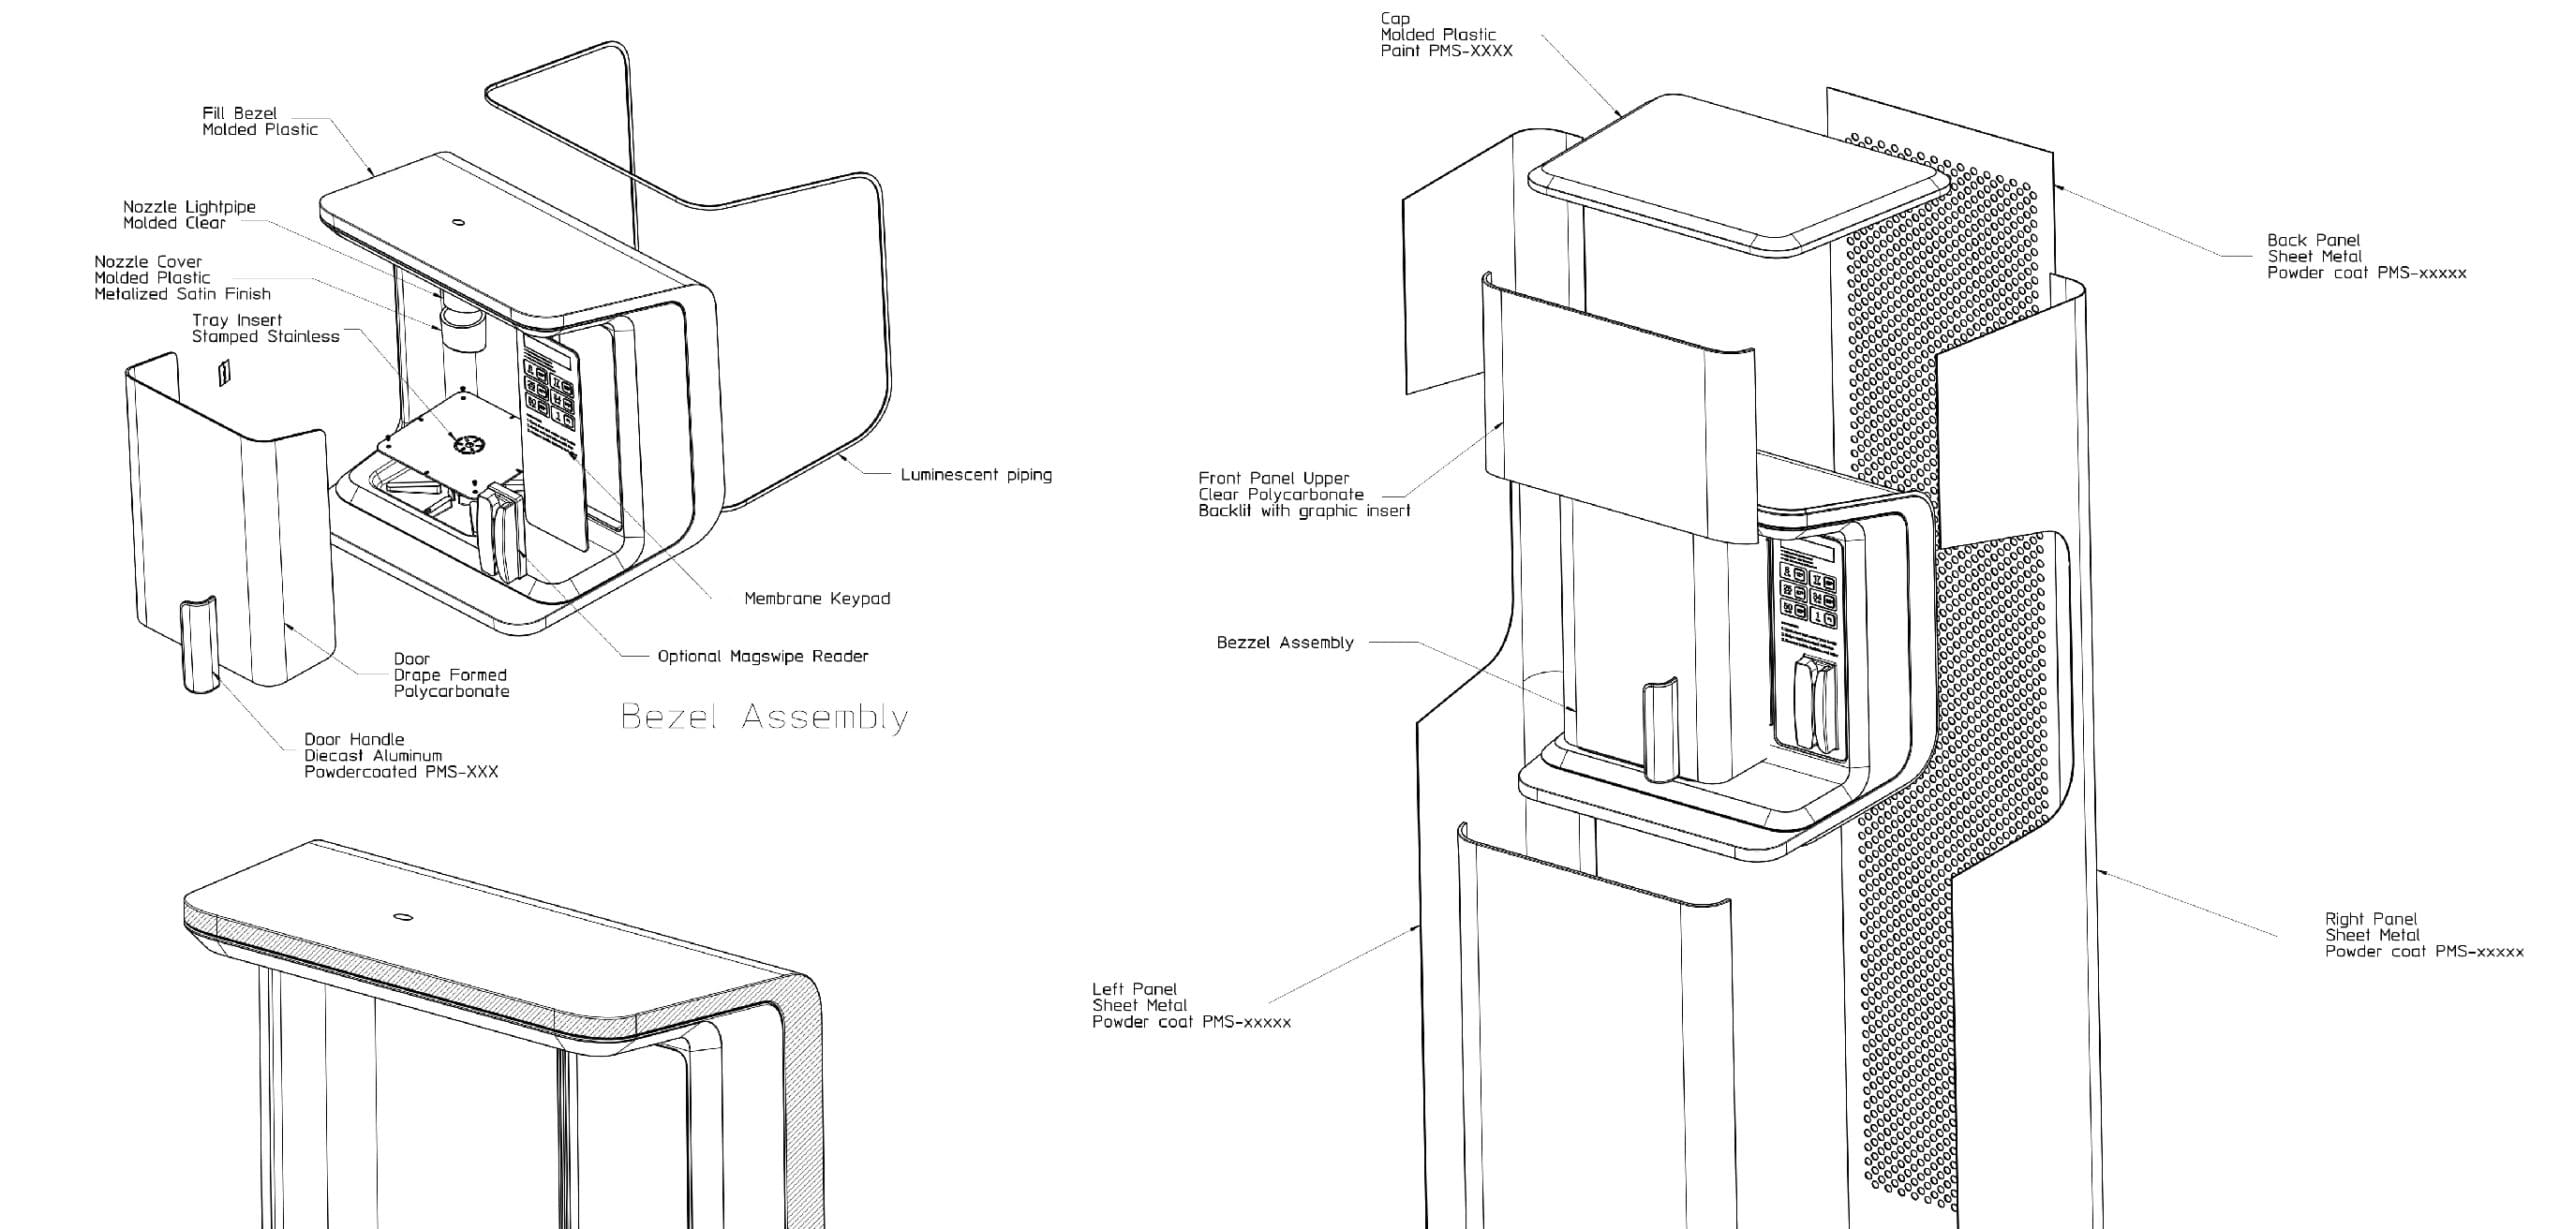 FloWater Industrial design schematics